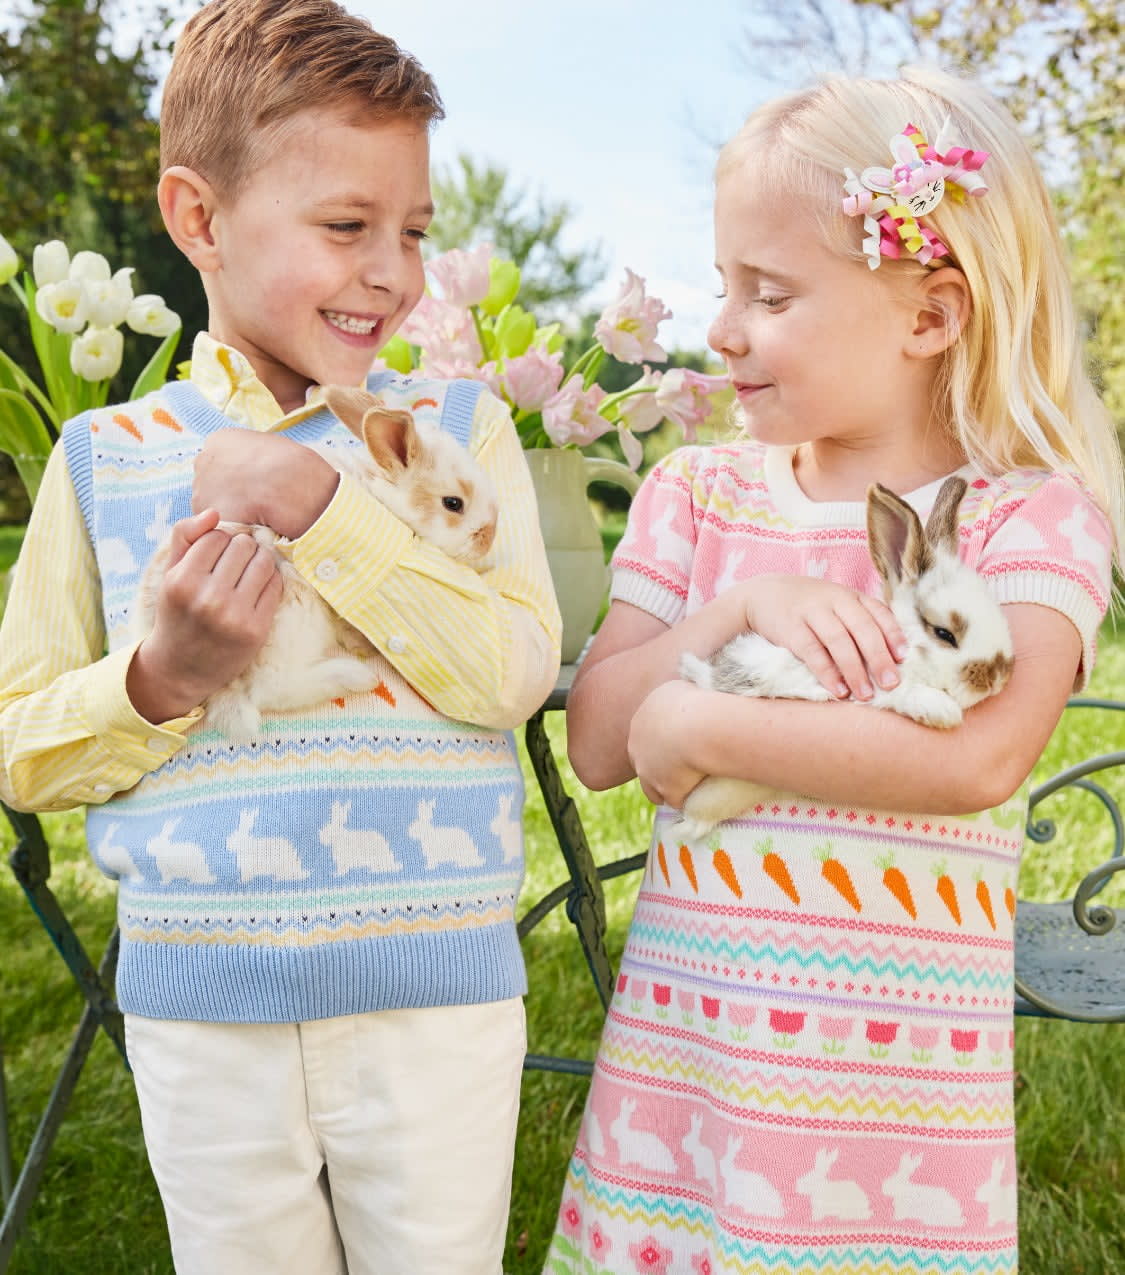 La pequeña tienda de Pascua de Hoppy | ¡Colecciones lindas de Egg-stra para todos los conejitos de la familia! 40% de descuento